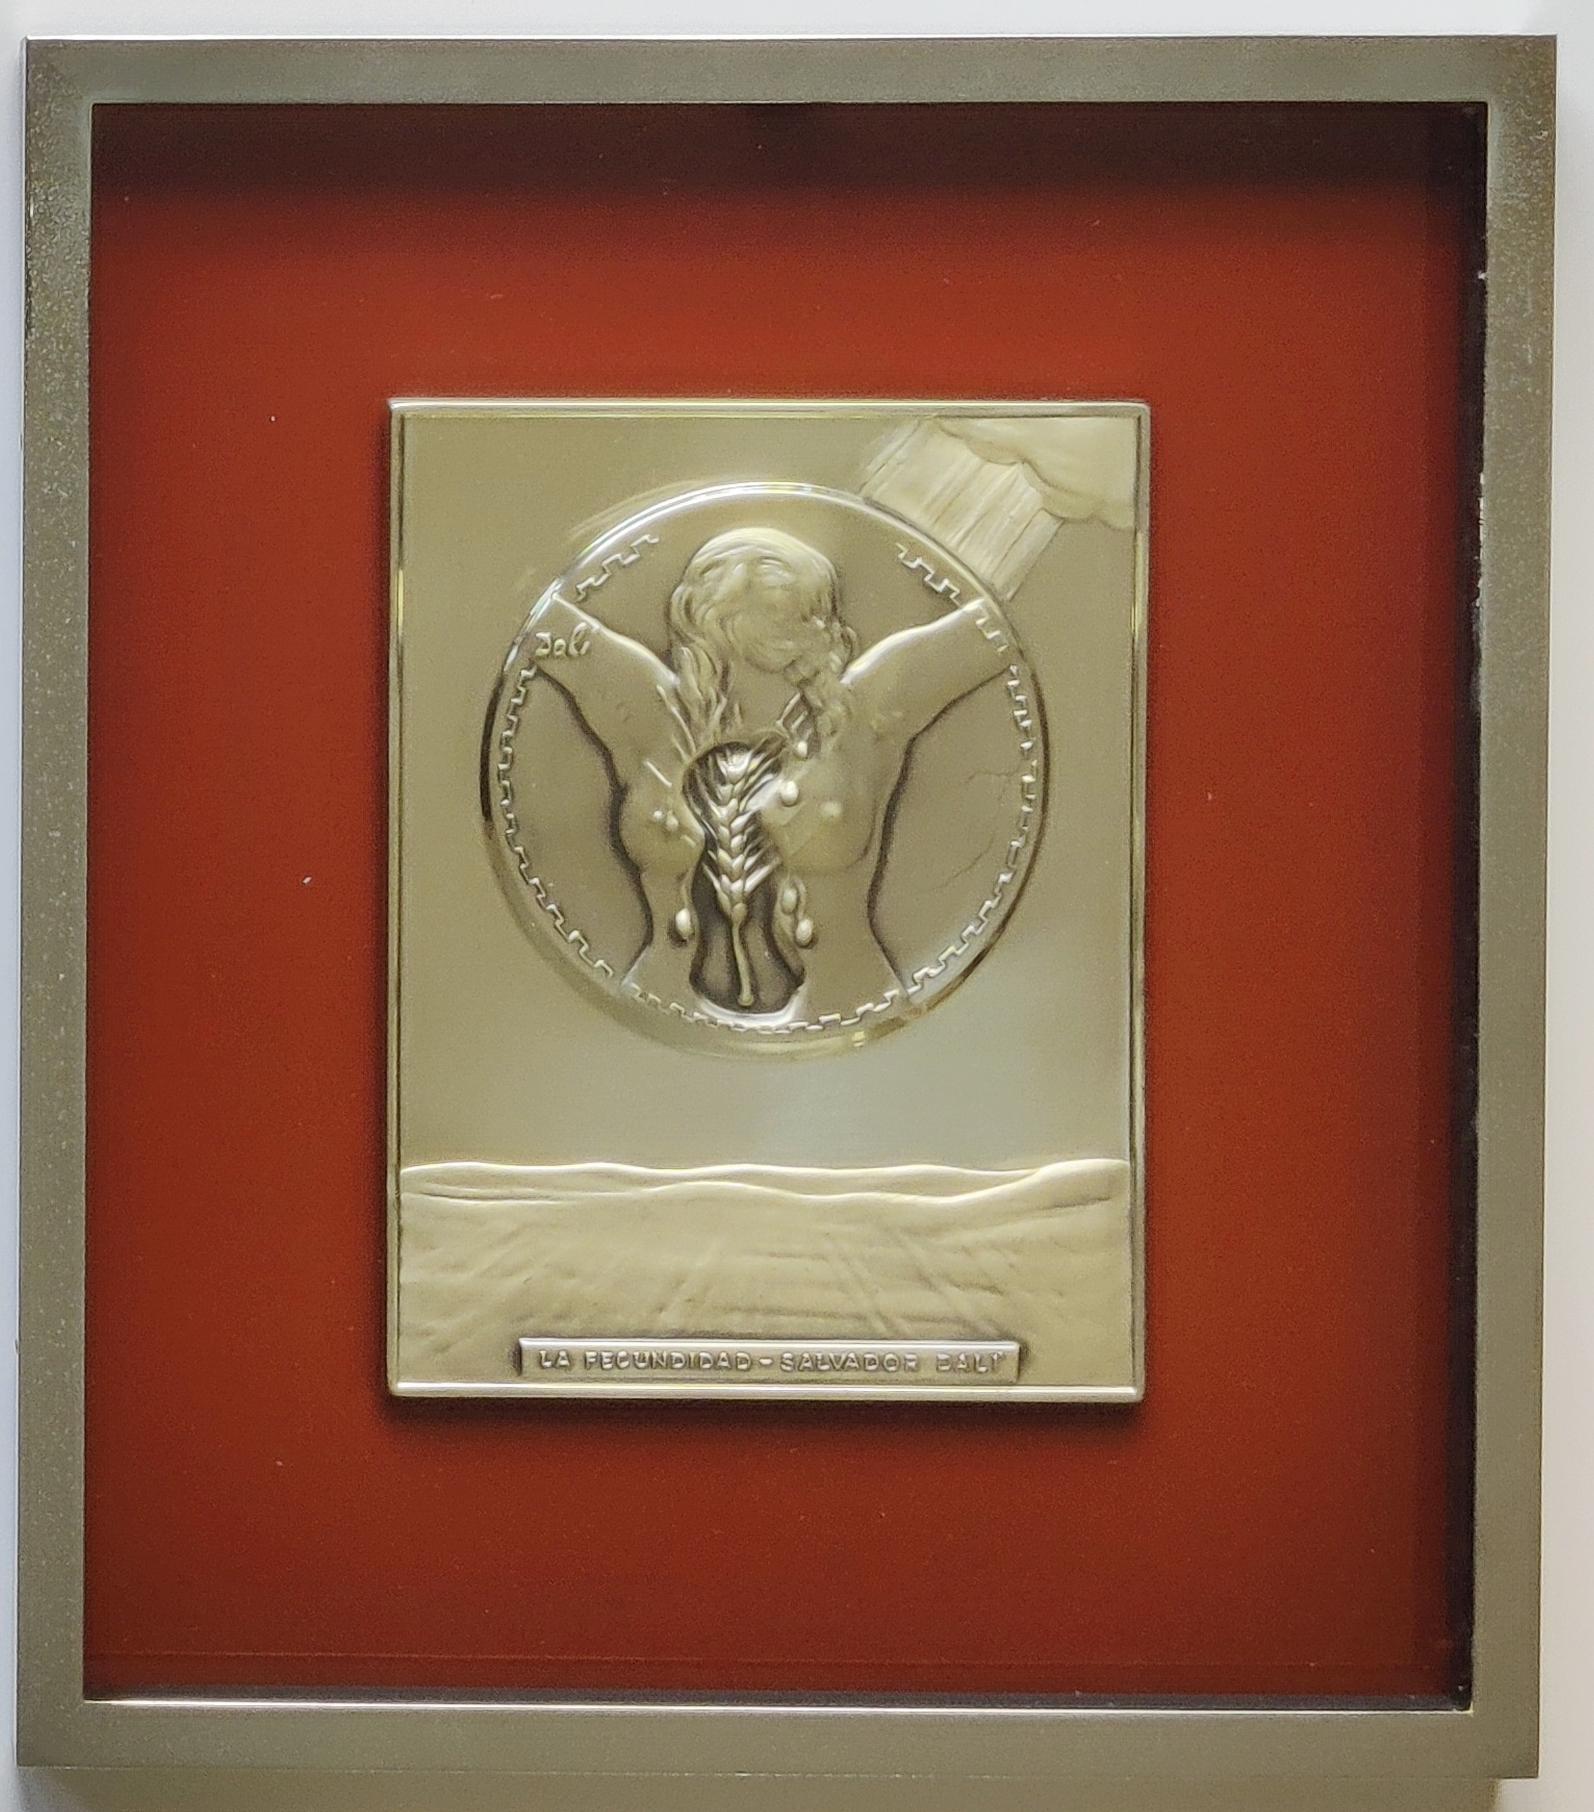 Salvador Dali 
Fécondité - Sculpture en argent en bas-relief, 1977
Dimensions : 24 x 18 cm
Encadré : 38 x 33 cm
Signé sur le bas-relief et signature imprimée sur le certificat au dos.
Numéro d'édition : I/564
Cette plaque en édition limitée a été